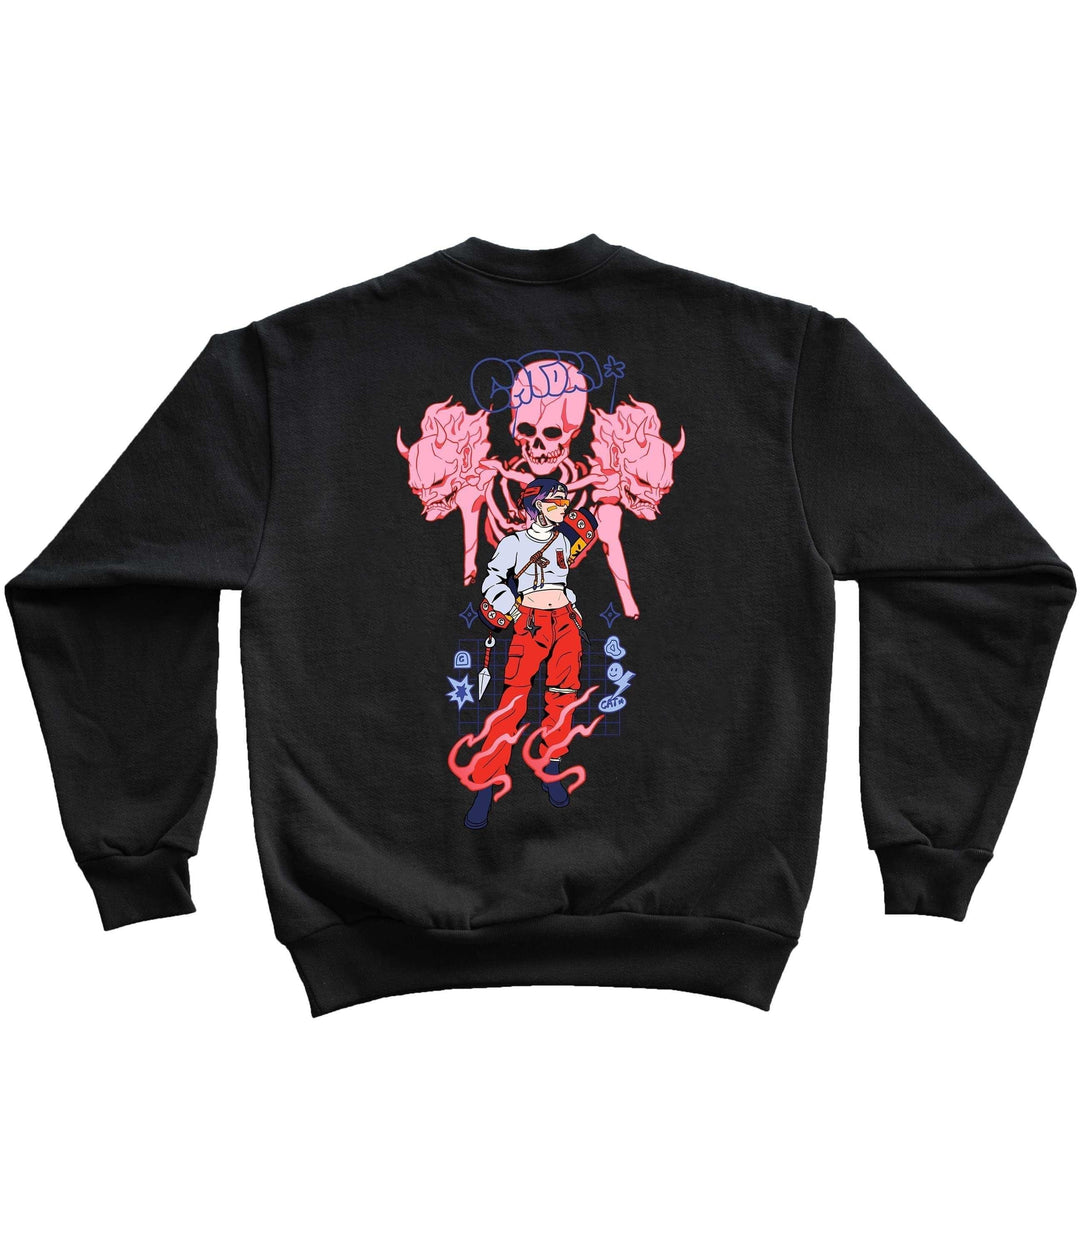 Kunoichi Sweatshirt at Catori Clothing | Graphic & Anime Tees, Hoodies & Sweatshirts 